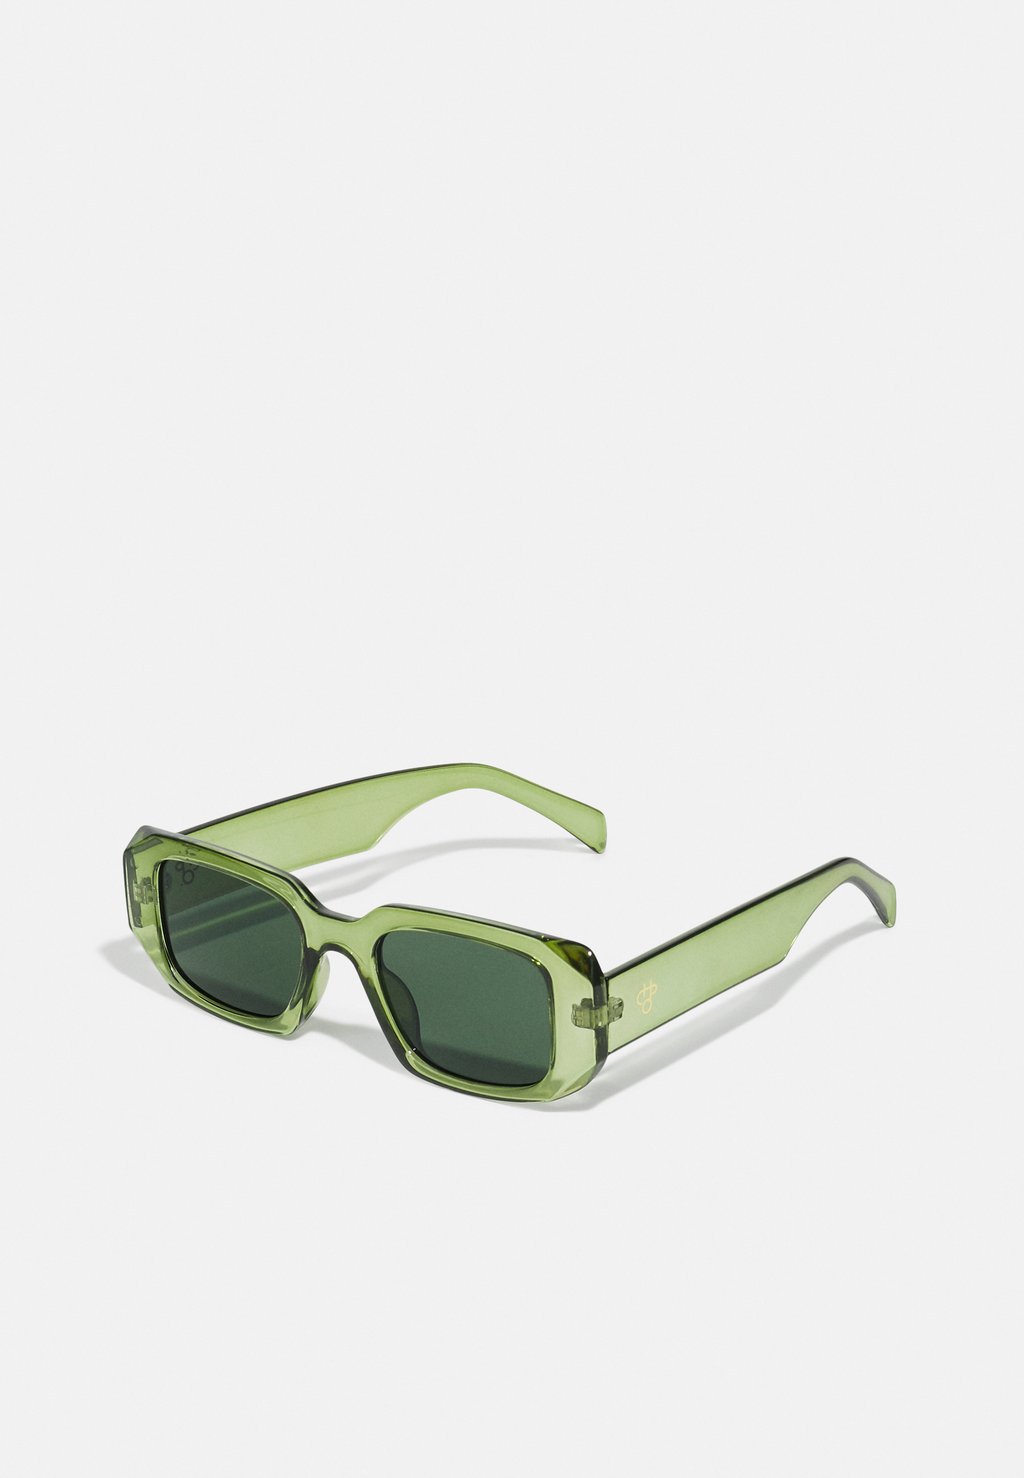 Солнцезащитные очки Reed Unisex CHPO, цвет forest green/green цена и фото